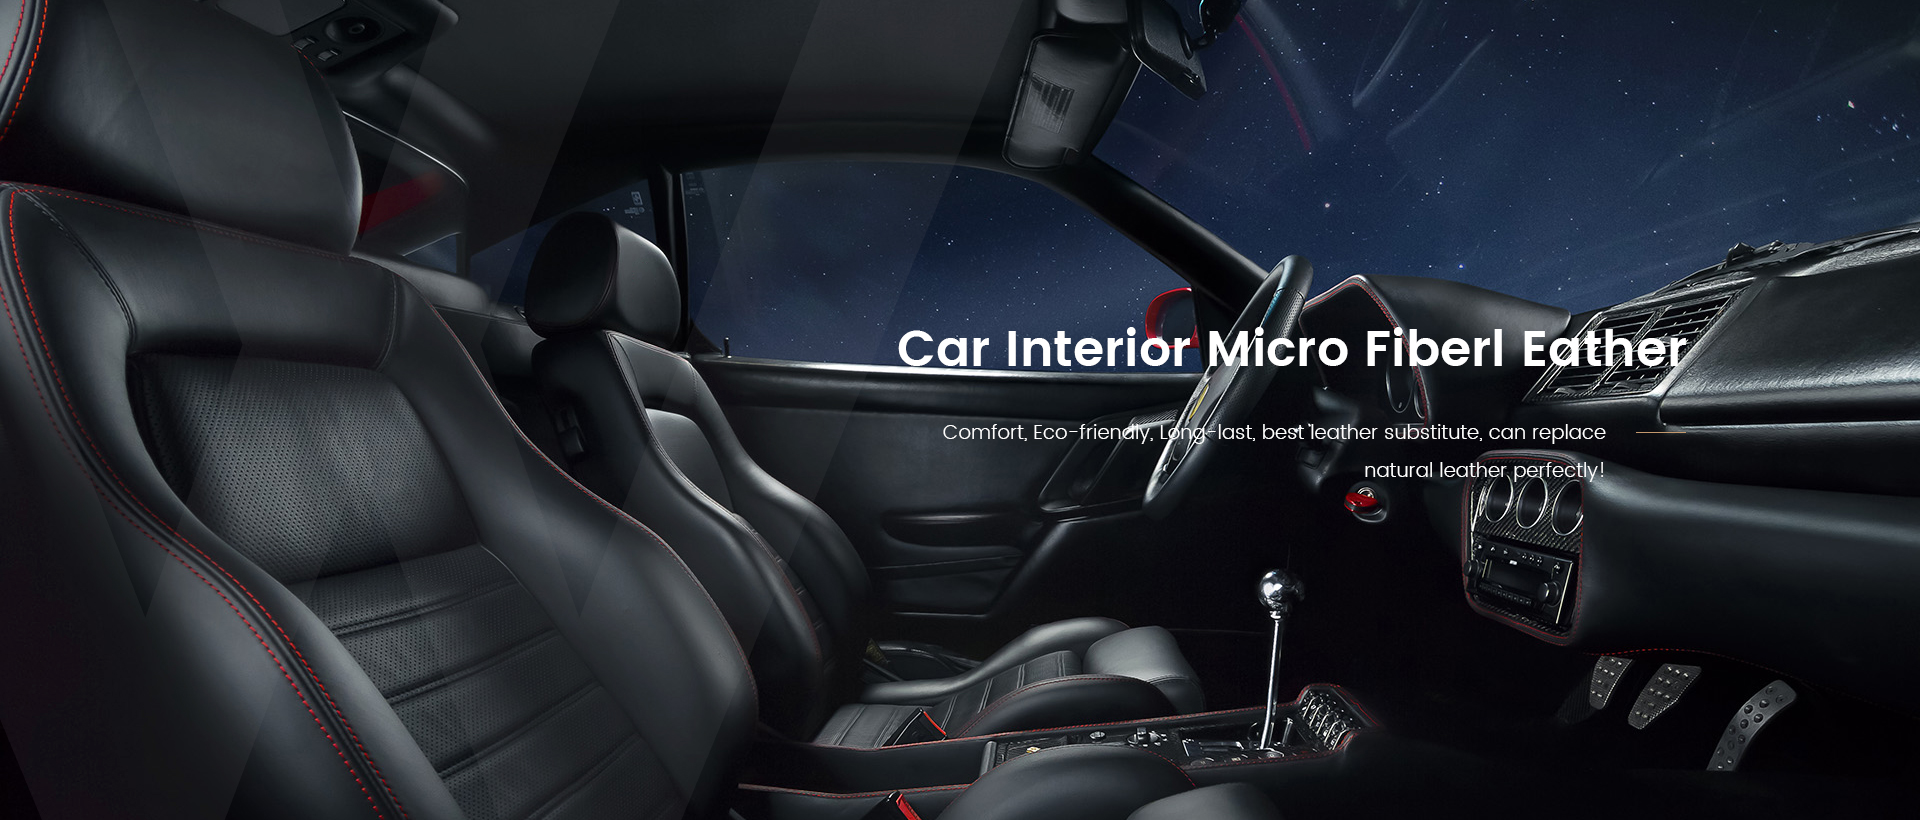 Car Interior Micro Fiberl Leather